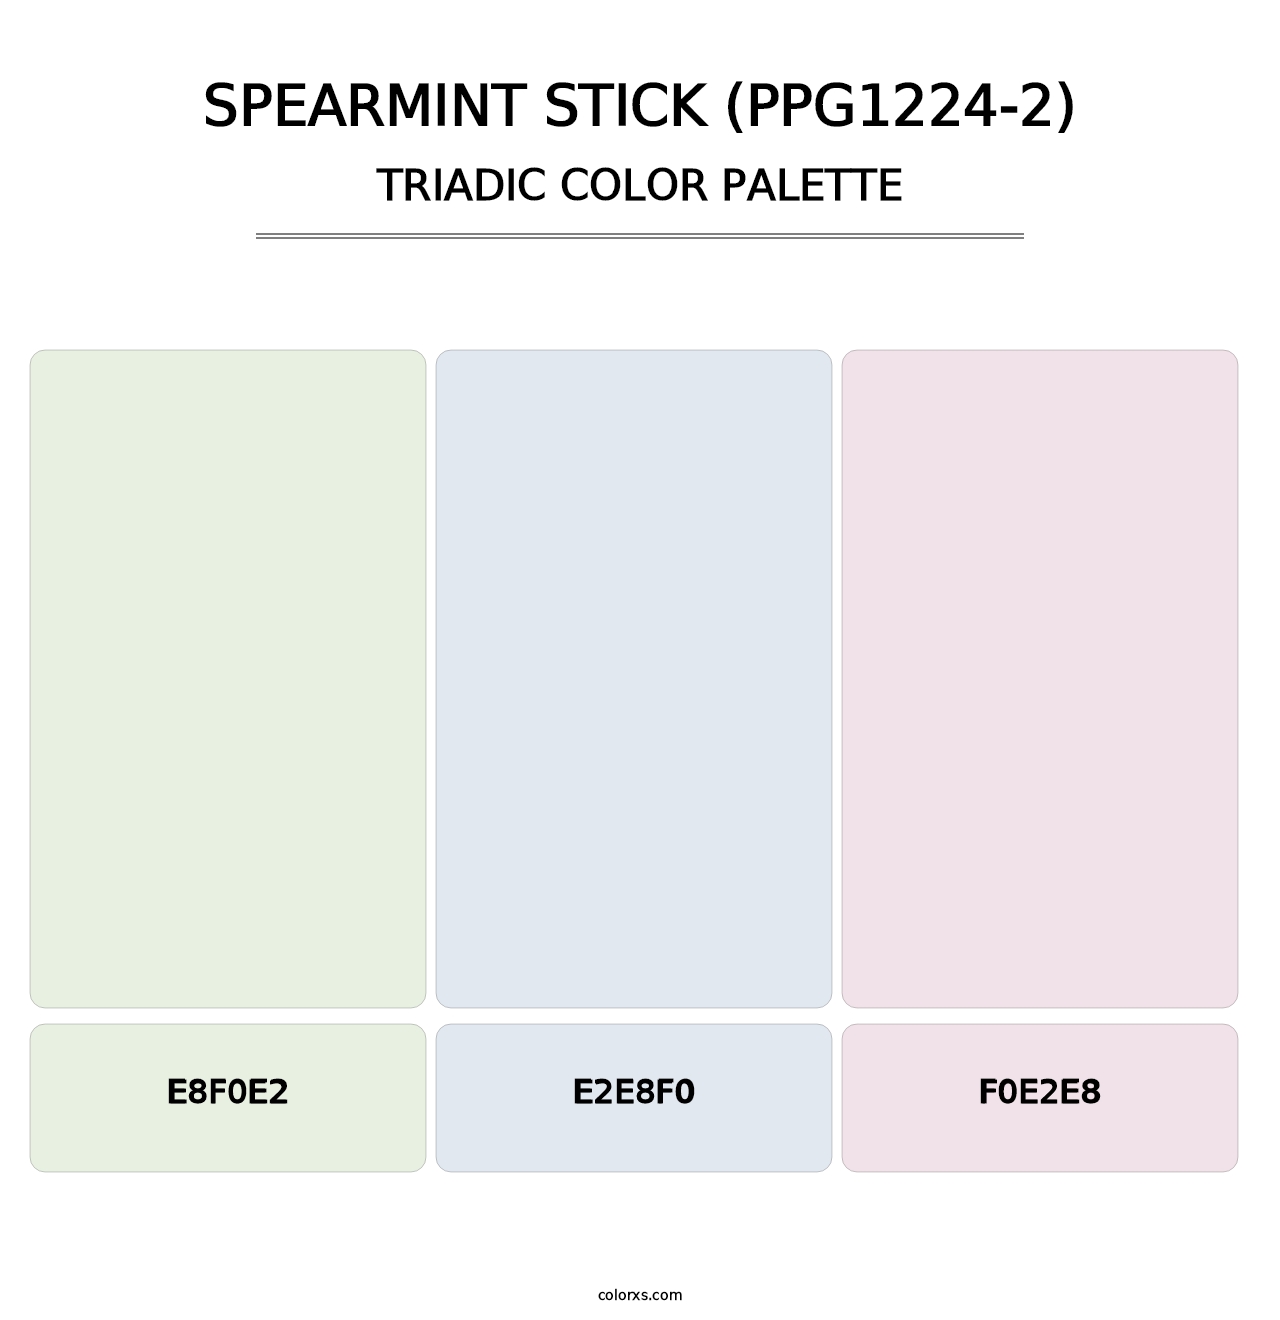 Spearmint Stick (PPG1224-2) - Triadic Color Palette